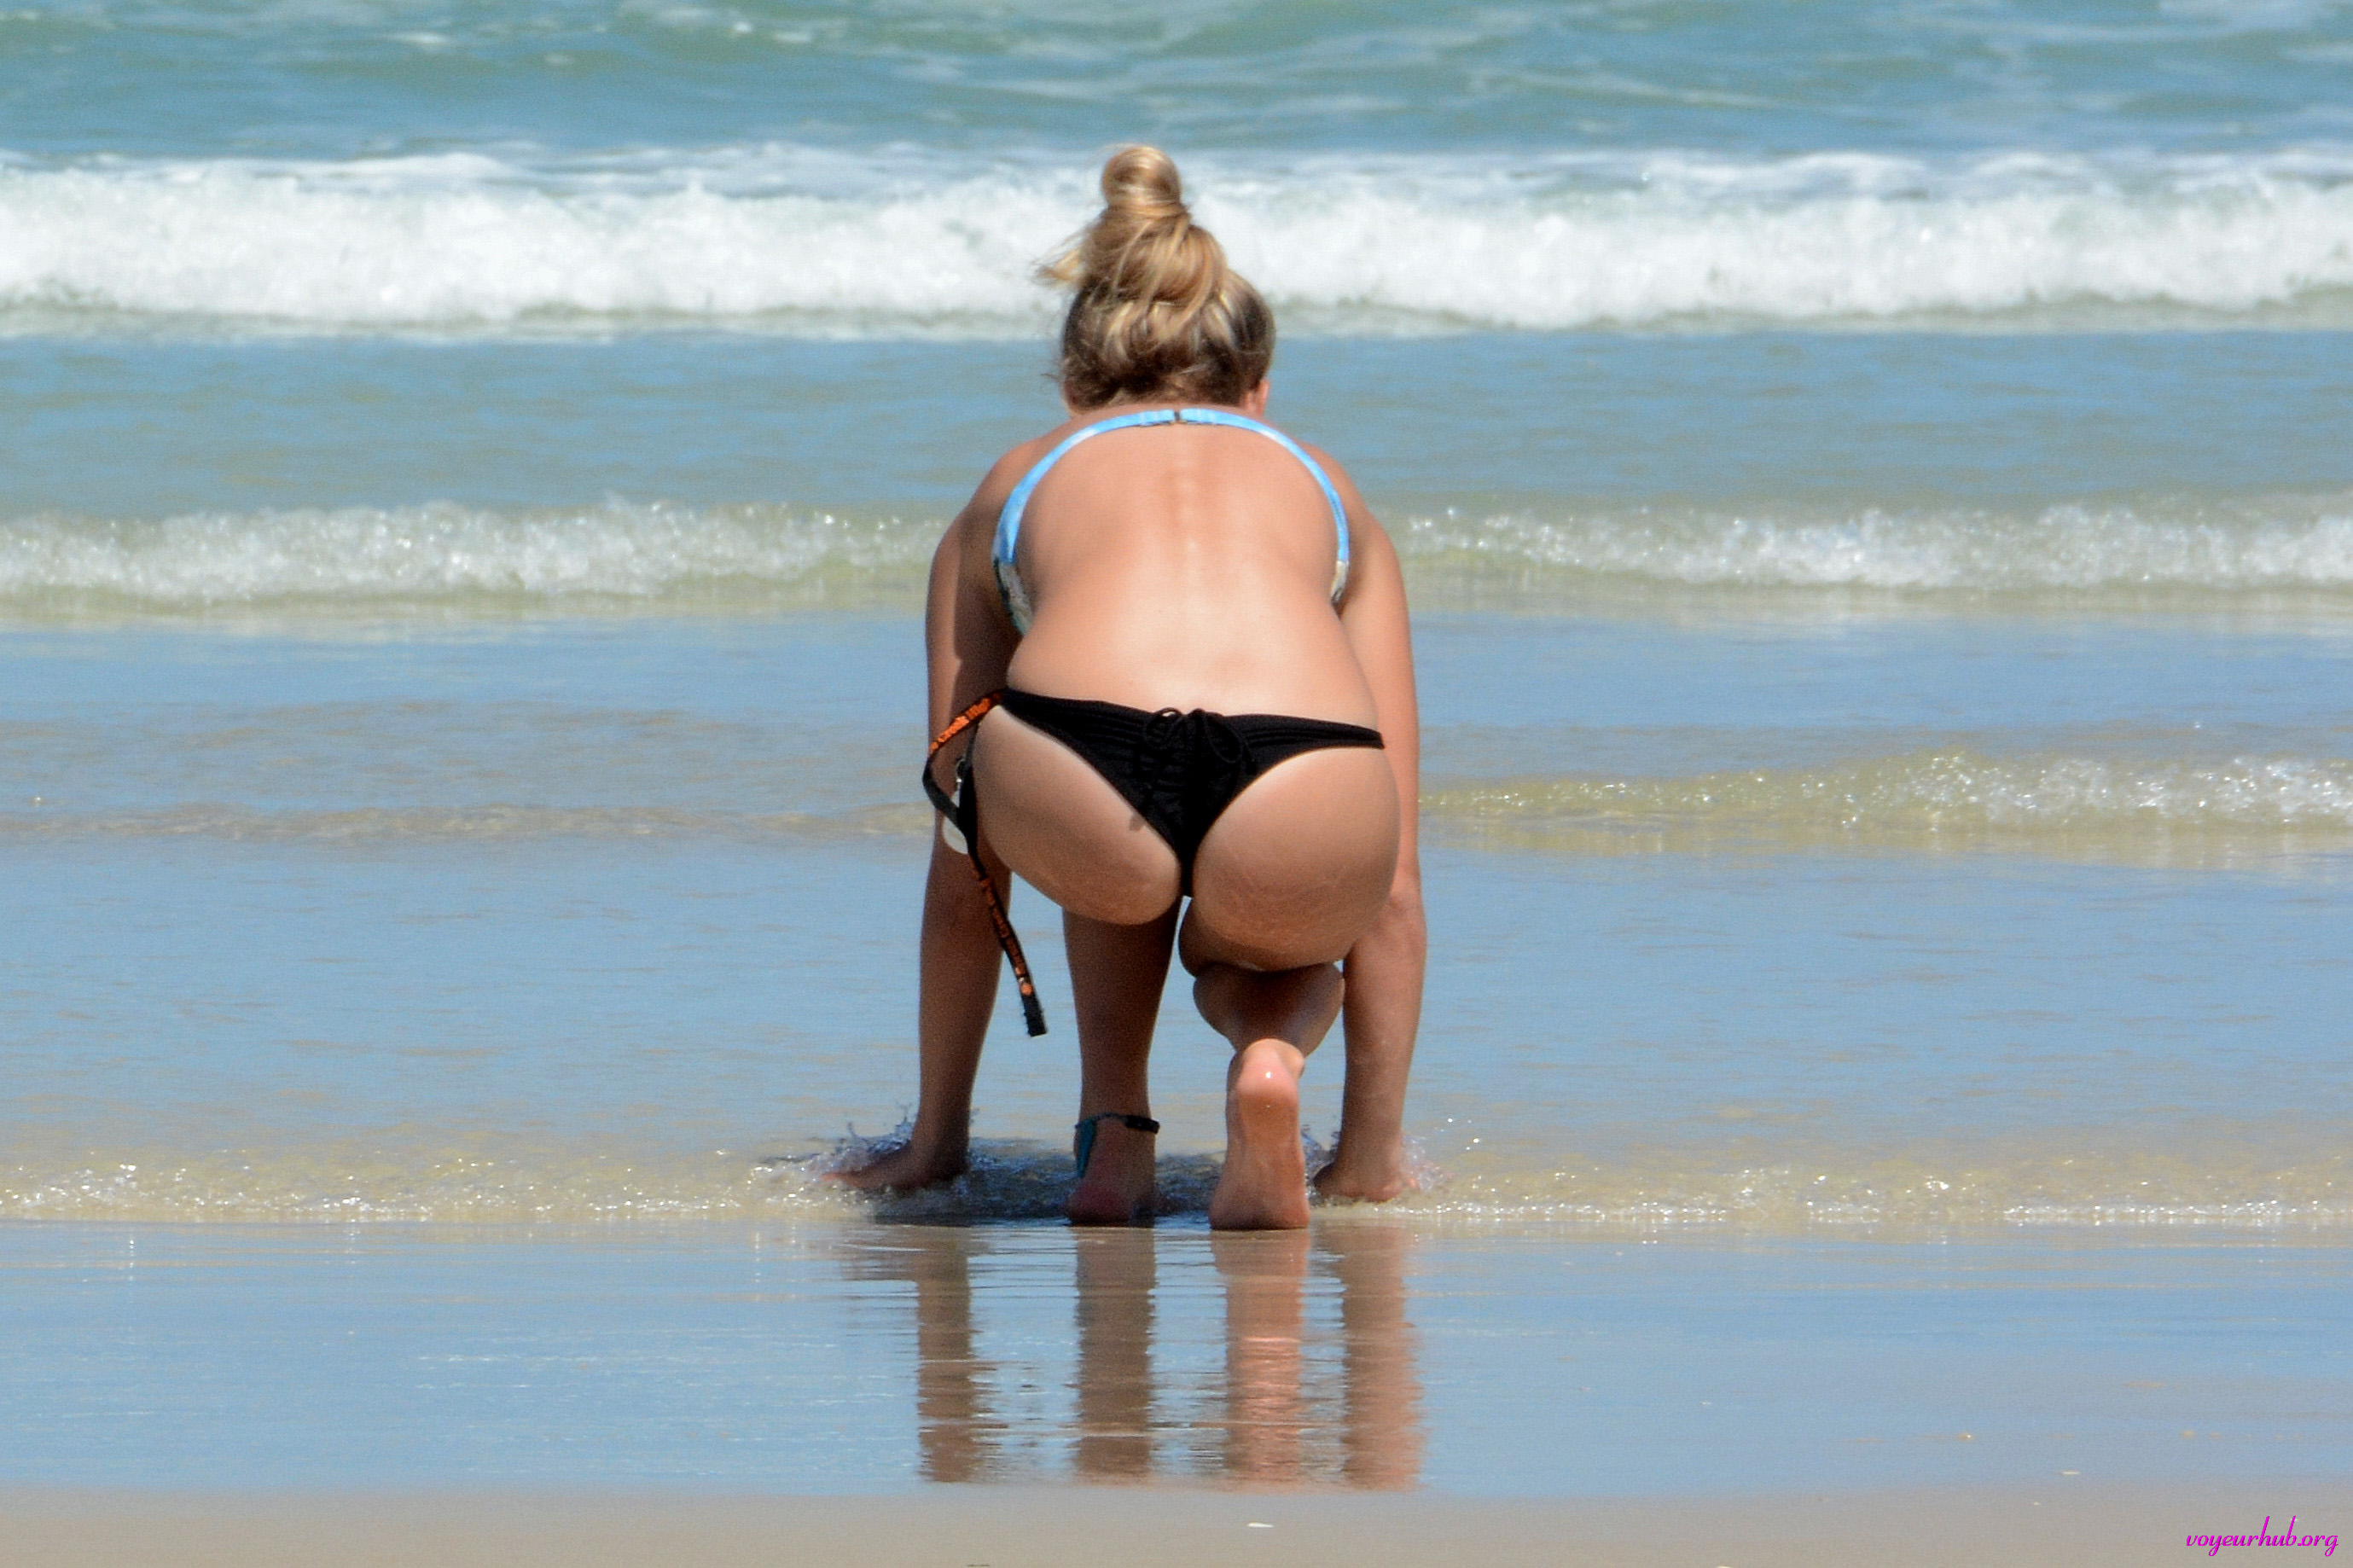 Voyeur beach pics of girls in bikinis at Daytona beach